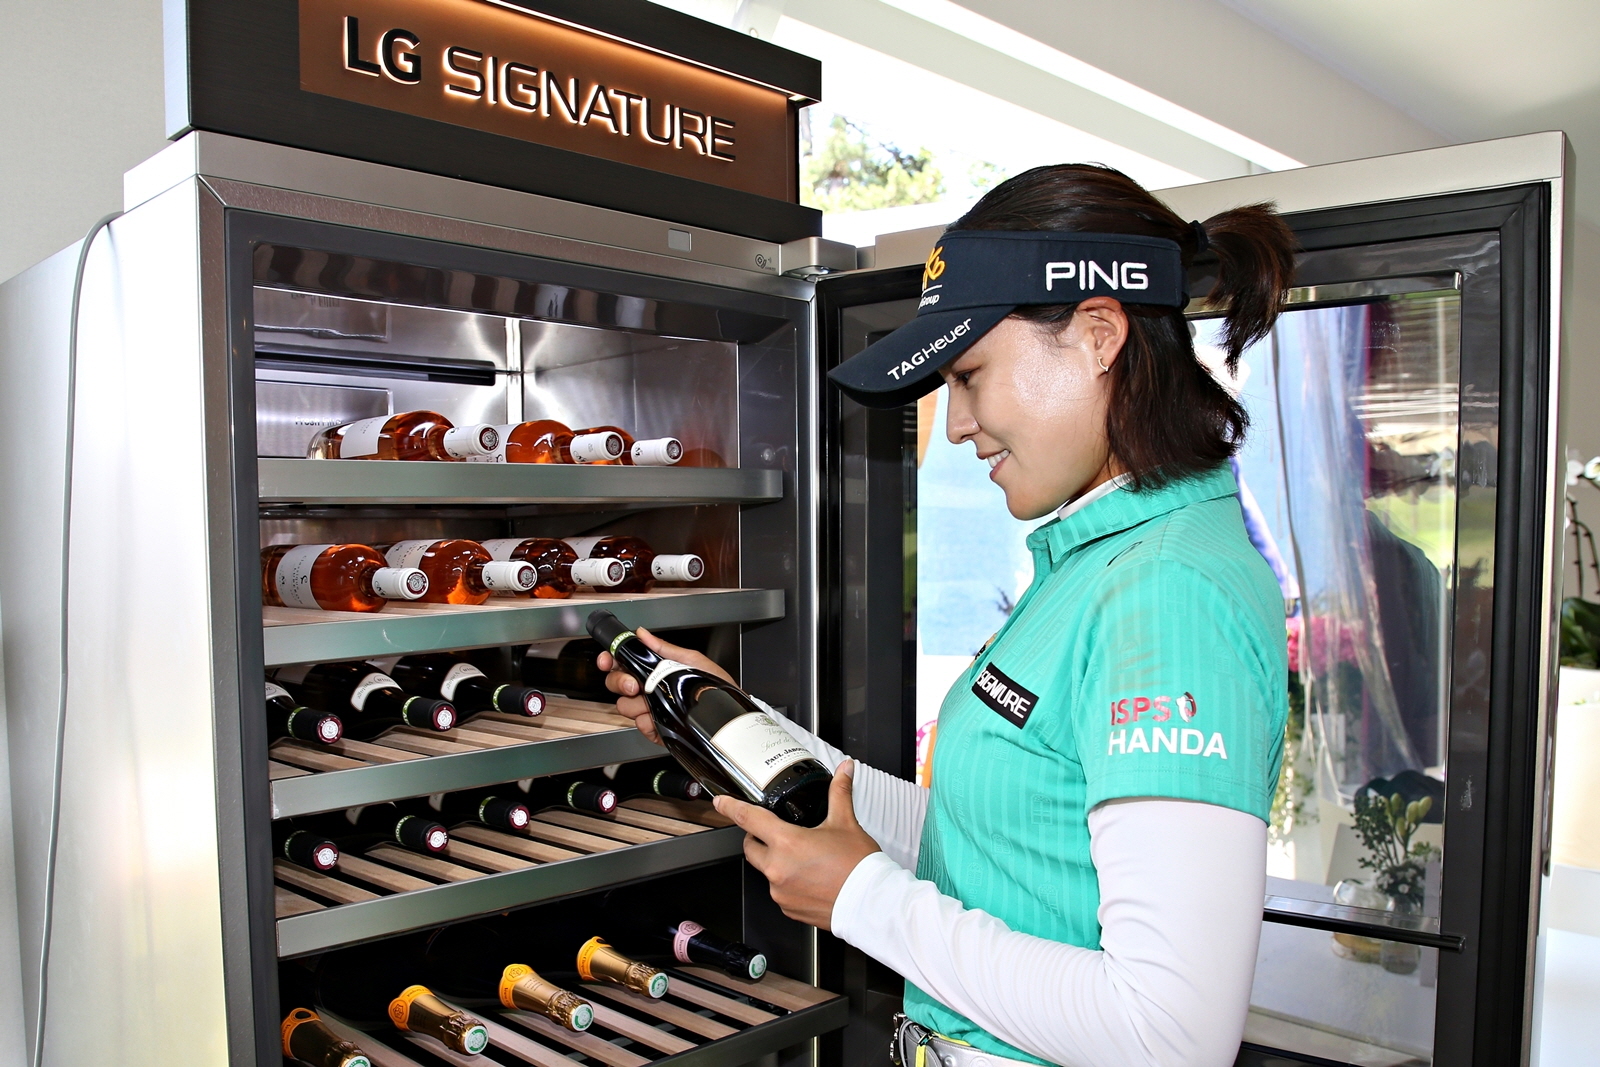 LG전자가 LPGA 메이저 골프대회인 ‘에비앙 챔피언십’에서 超프리미엄 ‘LG 시그니처’를 적극 알리고 있다. 전인지 선수가 LG 시그니처 와인셀러를 체험하고 있다